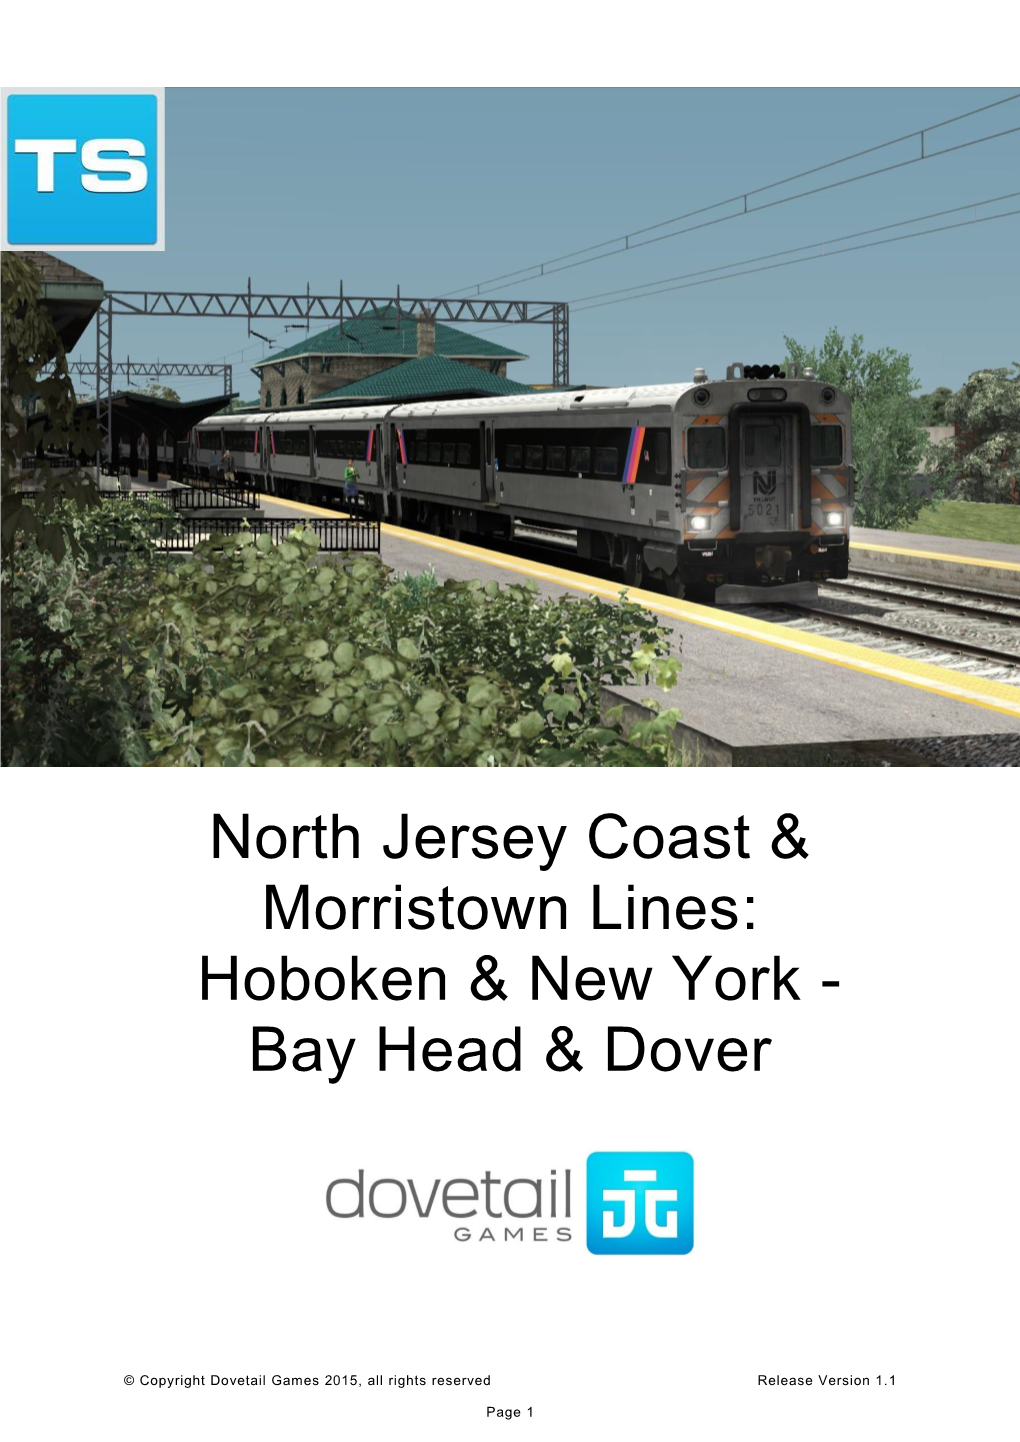 North Jersey Coast & Morristown Lines: Hoboken & New York